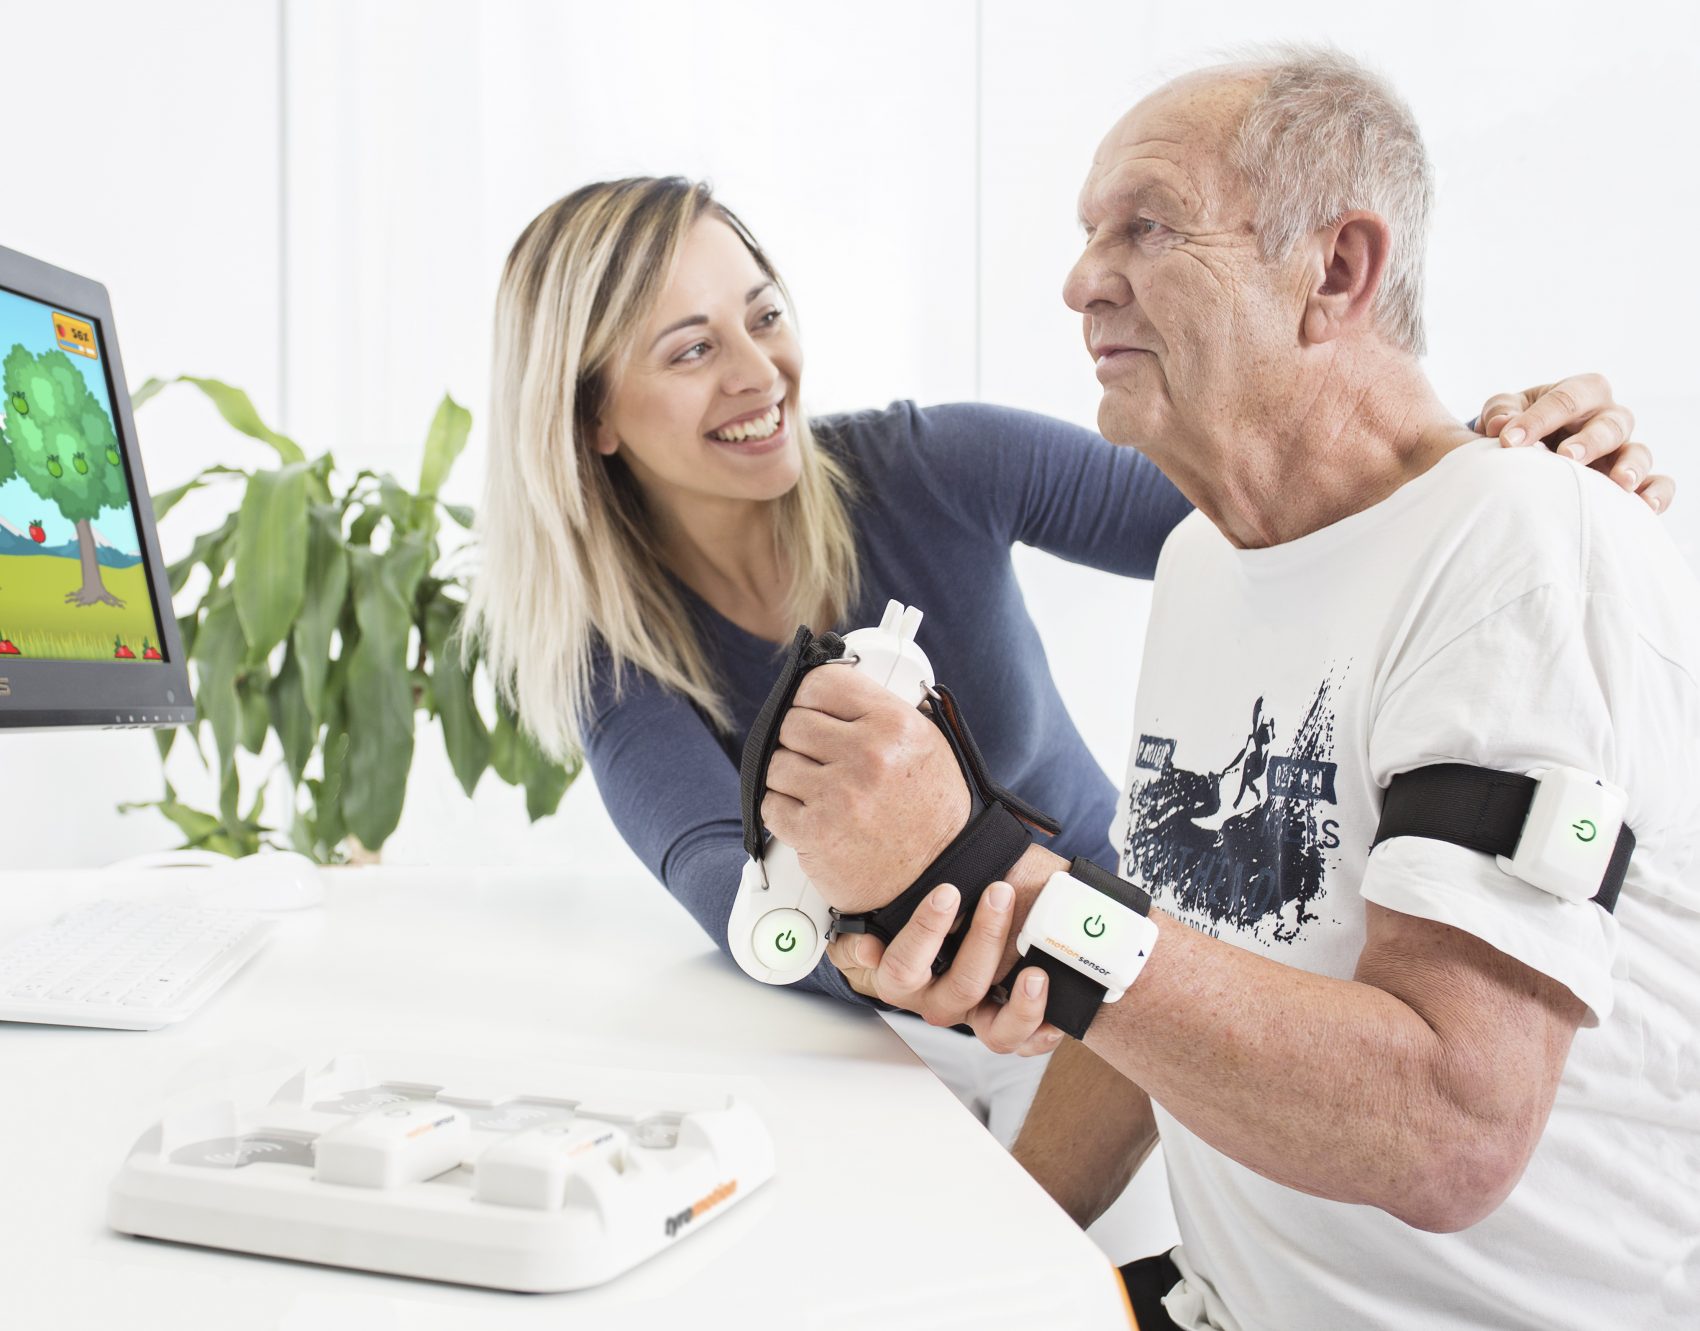 PABLO in Therapieanwendung mit älterem Patienten, hält Sensor in der Hand